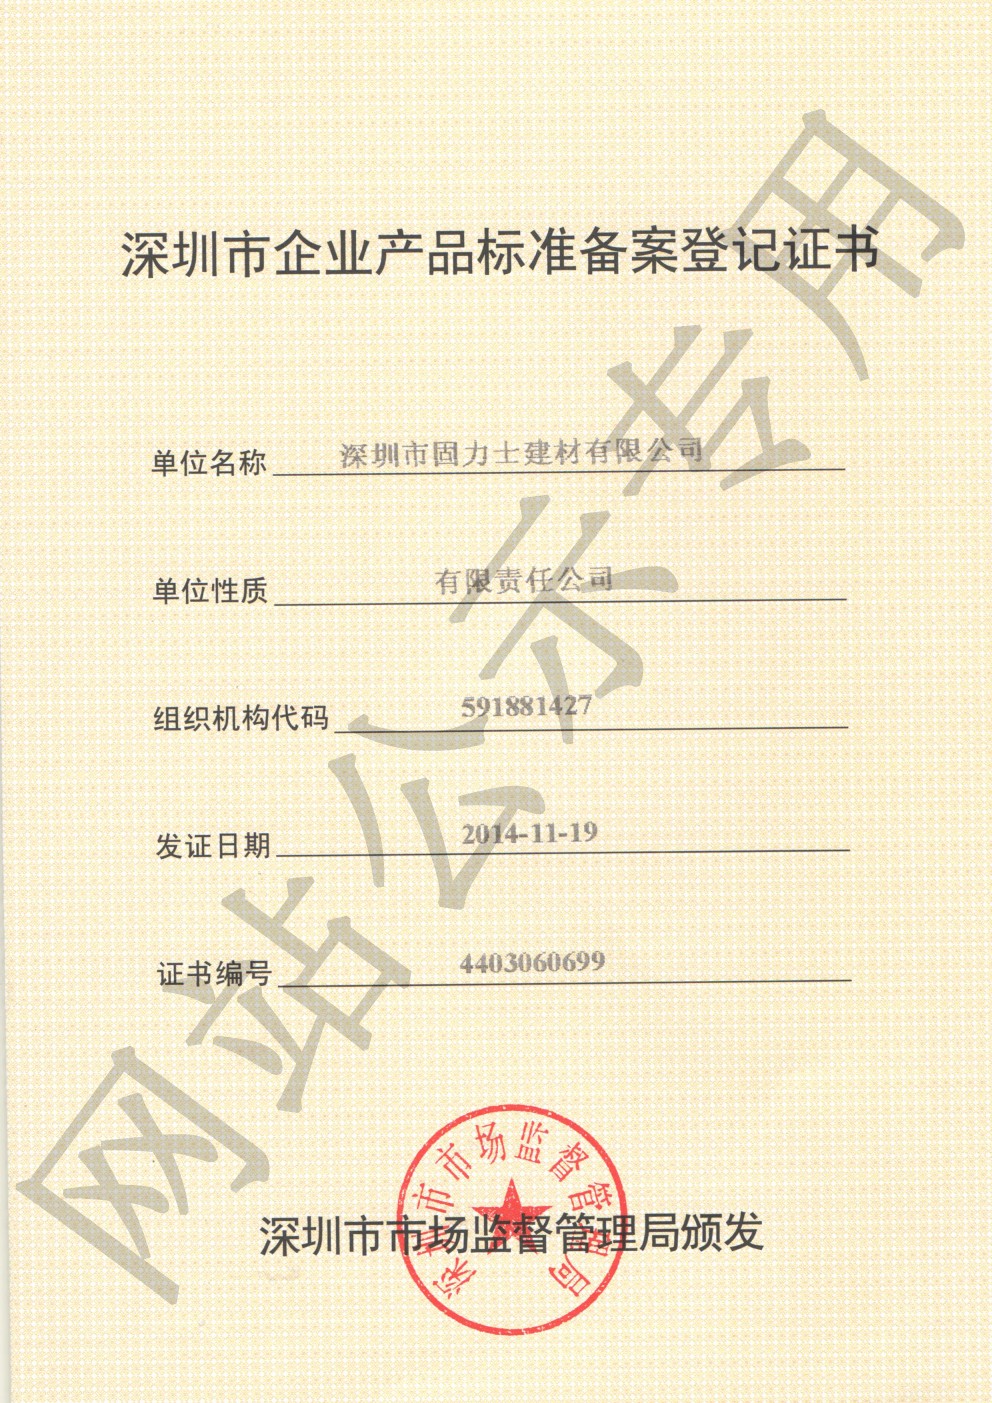 德令哈企业产品标准登记证书